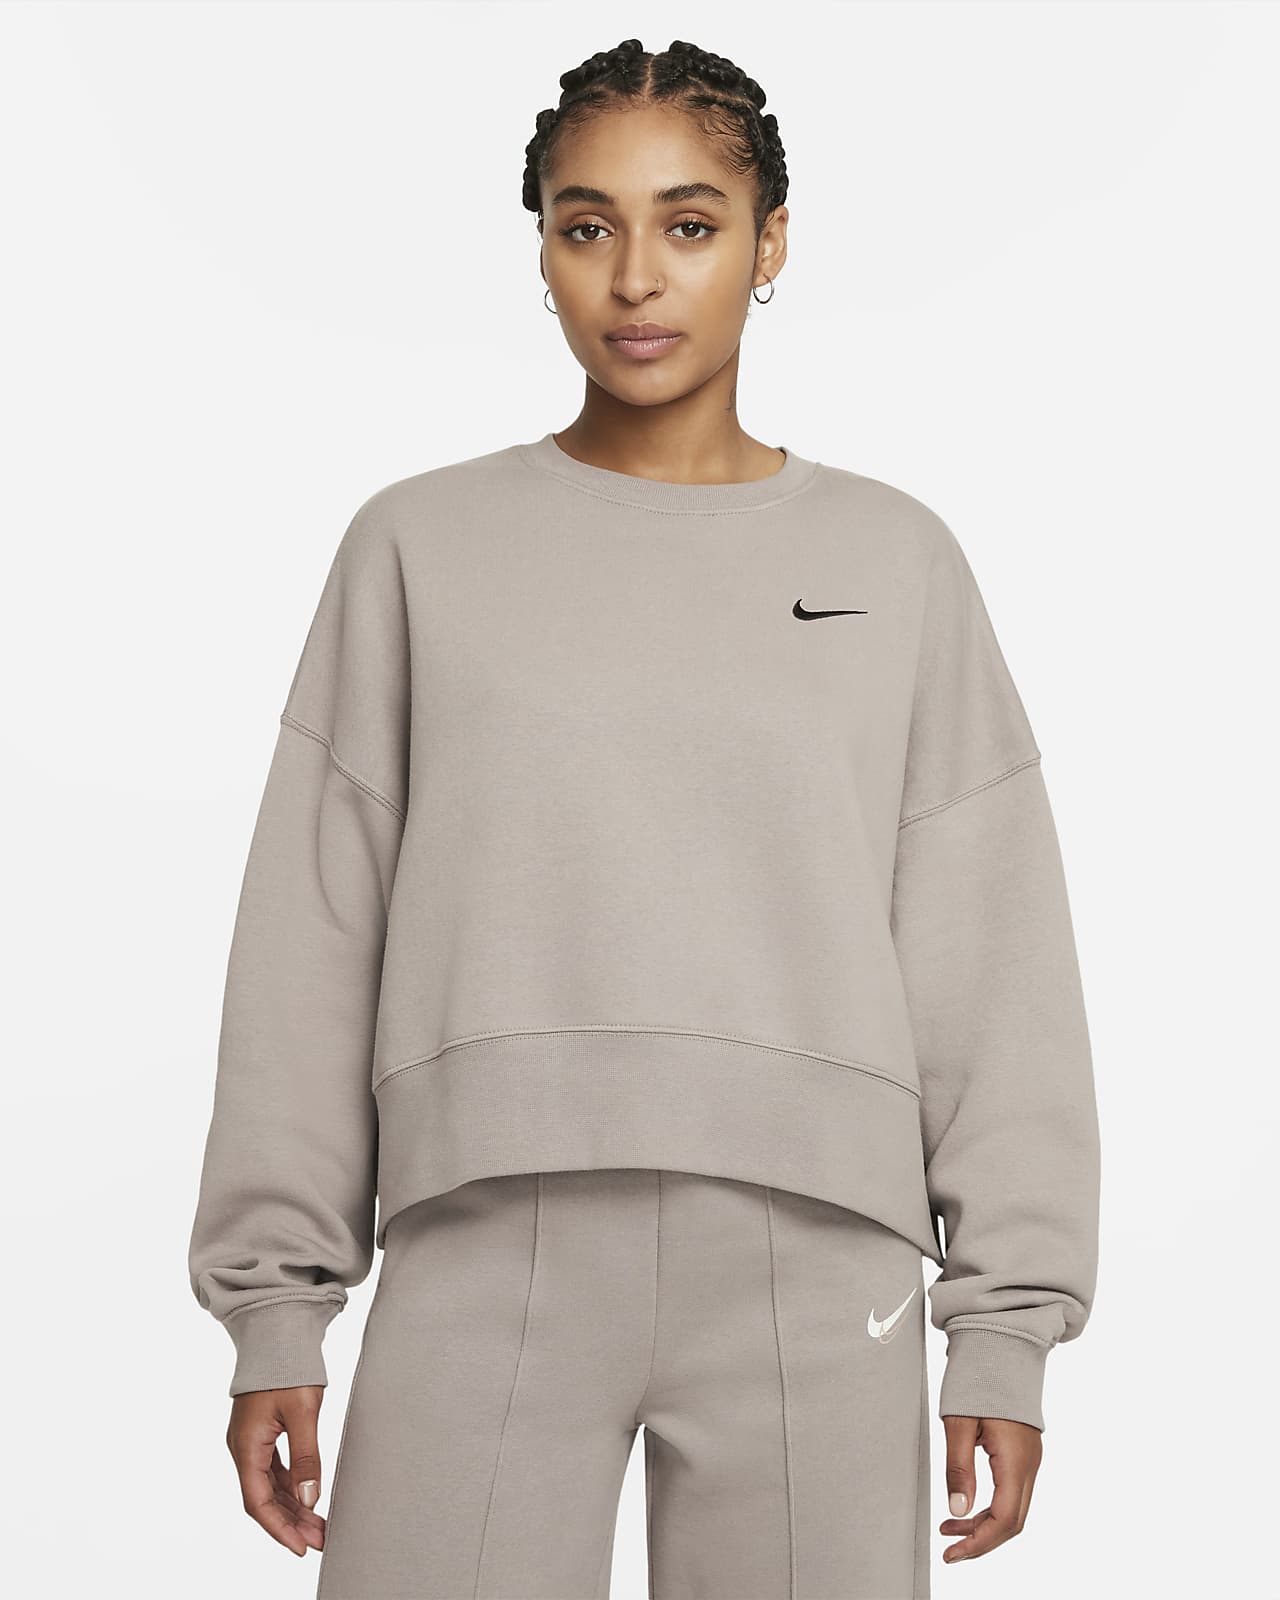 Nike Sportswear Women's Fleece Crop Top. Nike GB